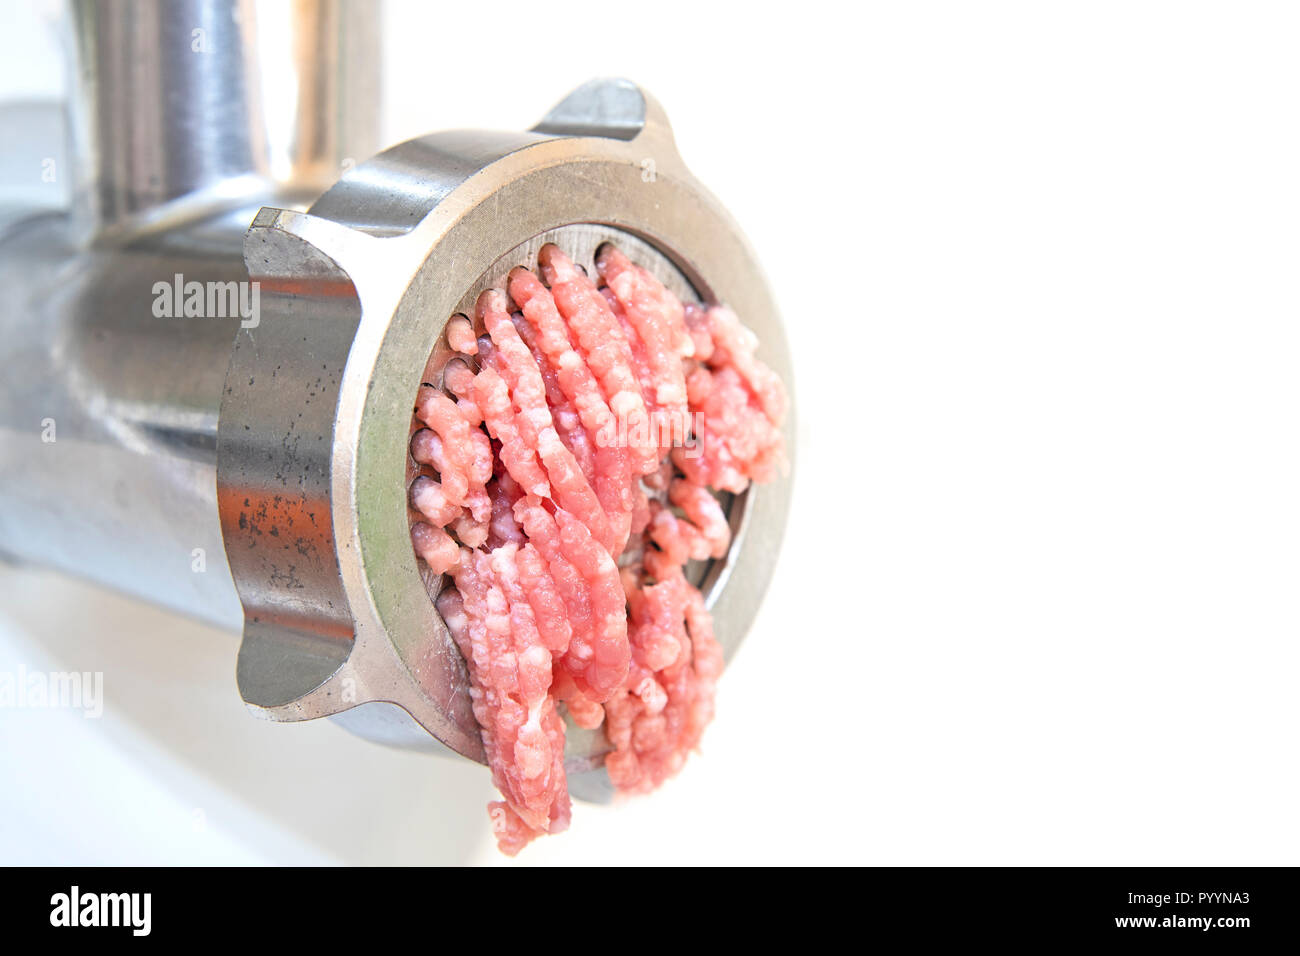 Macchina tritacarne e freschi di carne tritata Foto stock - Alamy